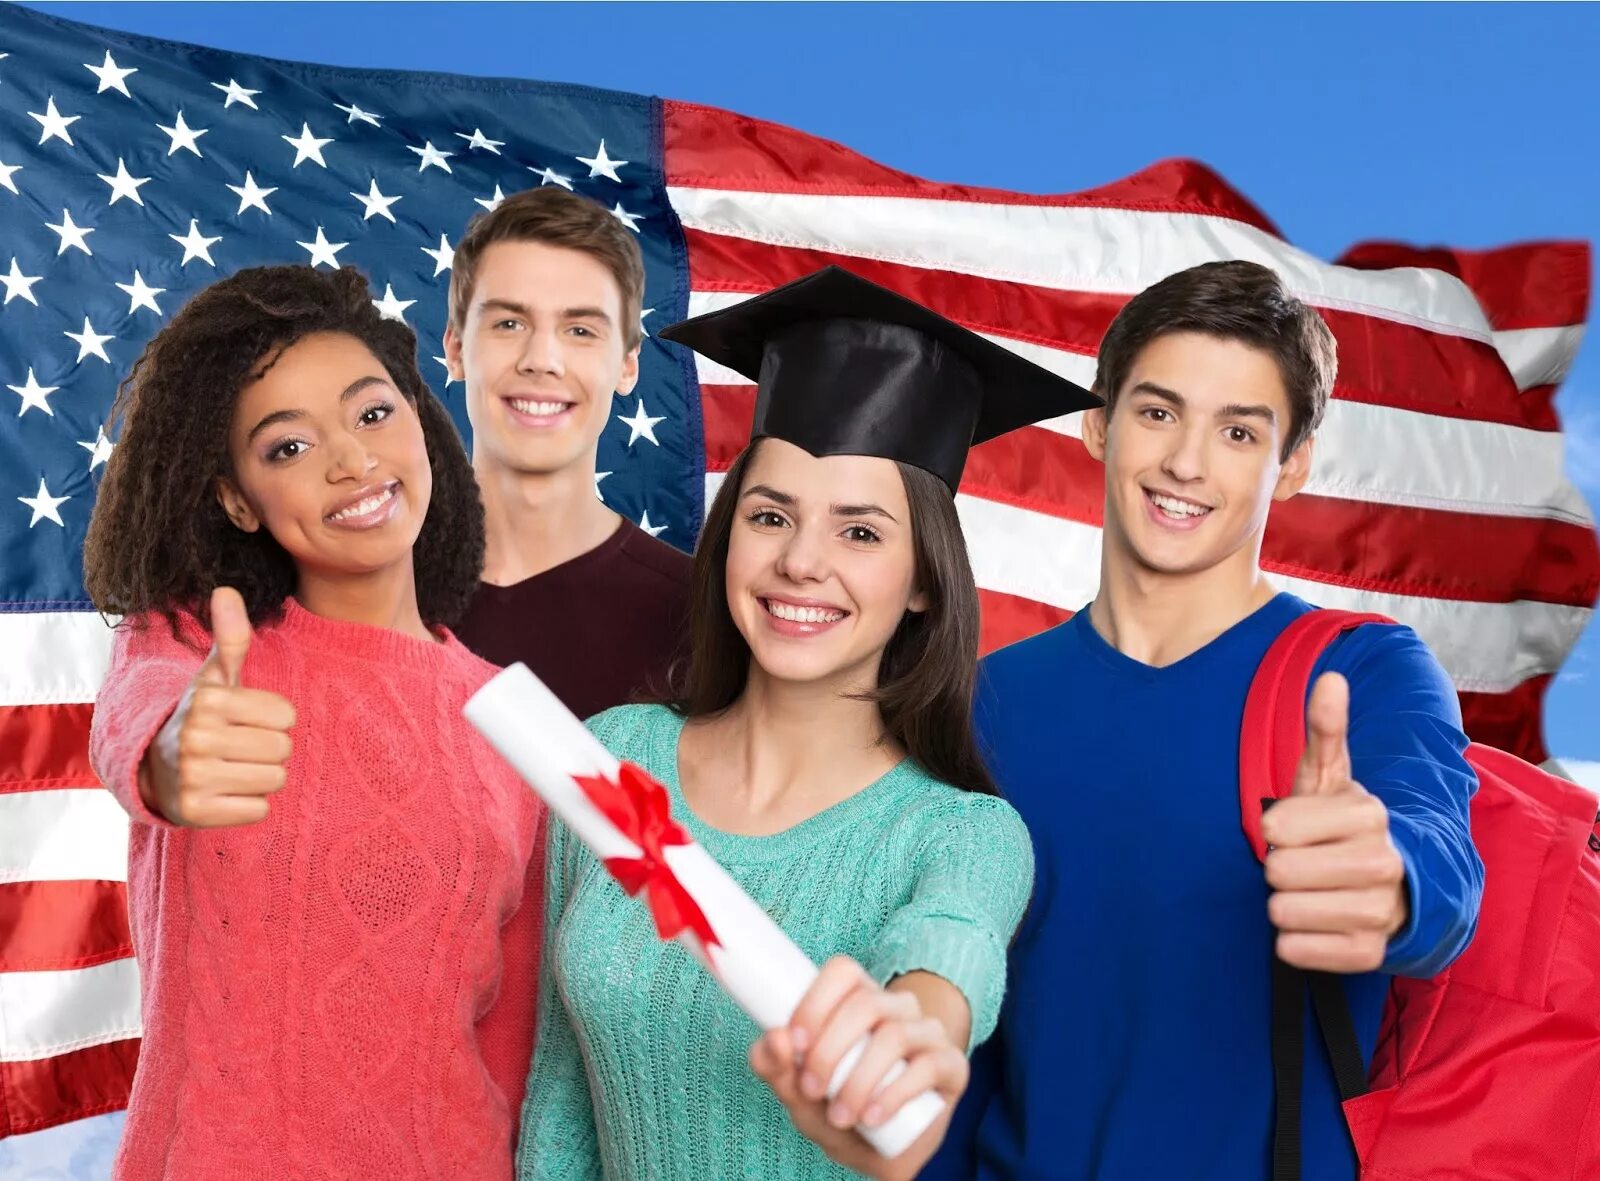 Apply students. Американские студенты. Студенчество в Америке. Студенты в Англии. Студенты разных национальностей.